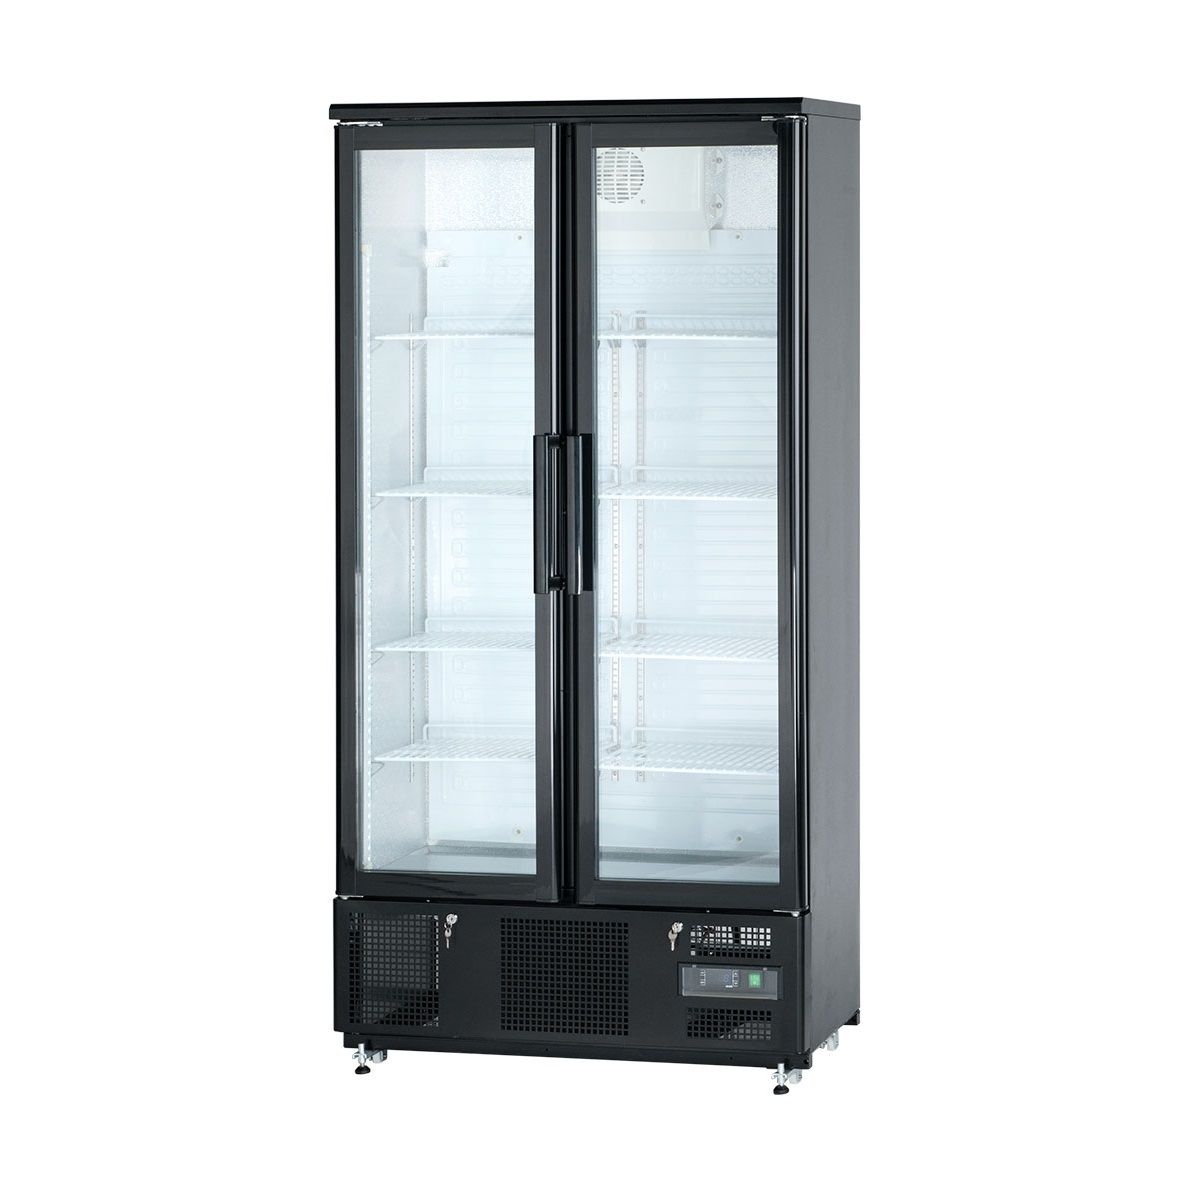 Холодильный шкаф витринного типа GASTRORAG sc316g.a. Шкаф холодильник Sagi as65. Шкаф холодильный барный Cooleq bf-150. Шкаф холодильный Брискли 5 черный. Холодильник шкаф витрина